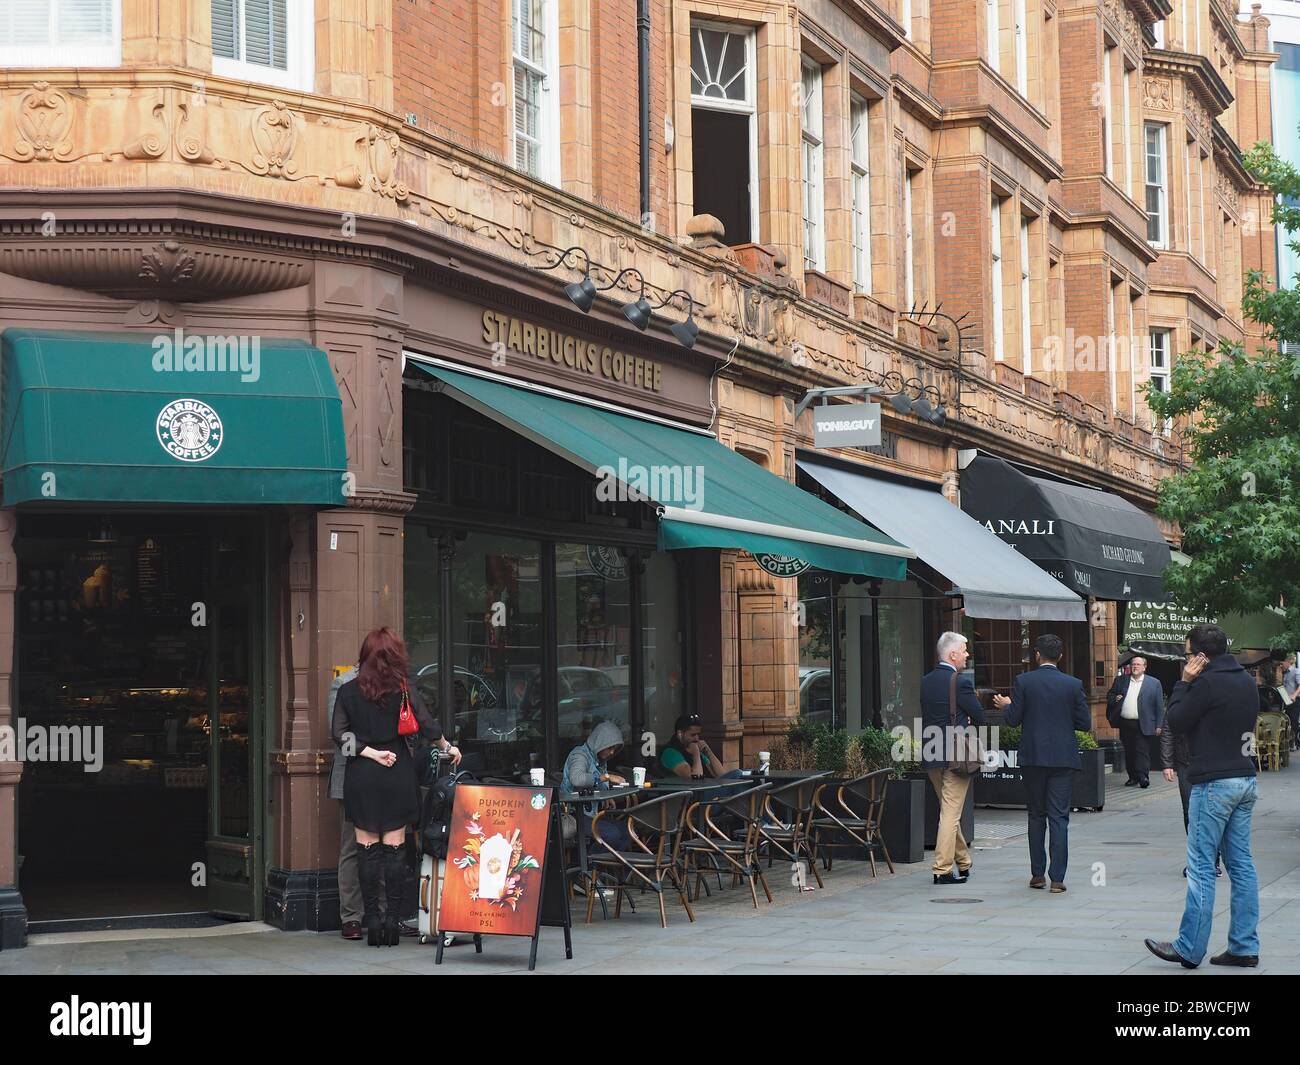 LONDRES - SEPT. 27, 2016: Une succursale de la chaîne internationale de cafés Starbucks dans un bâtiment orné près du quartier de Mayfair. Banque D'Images